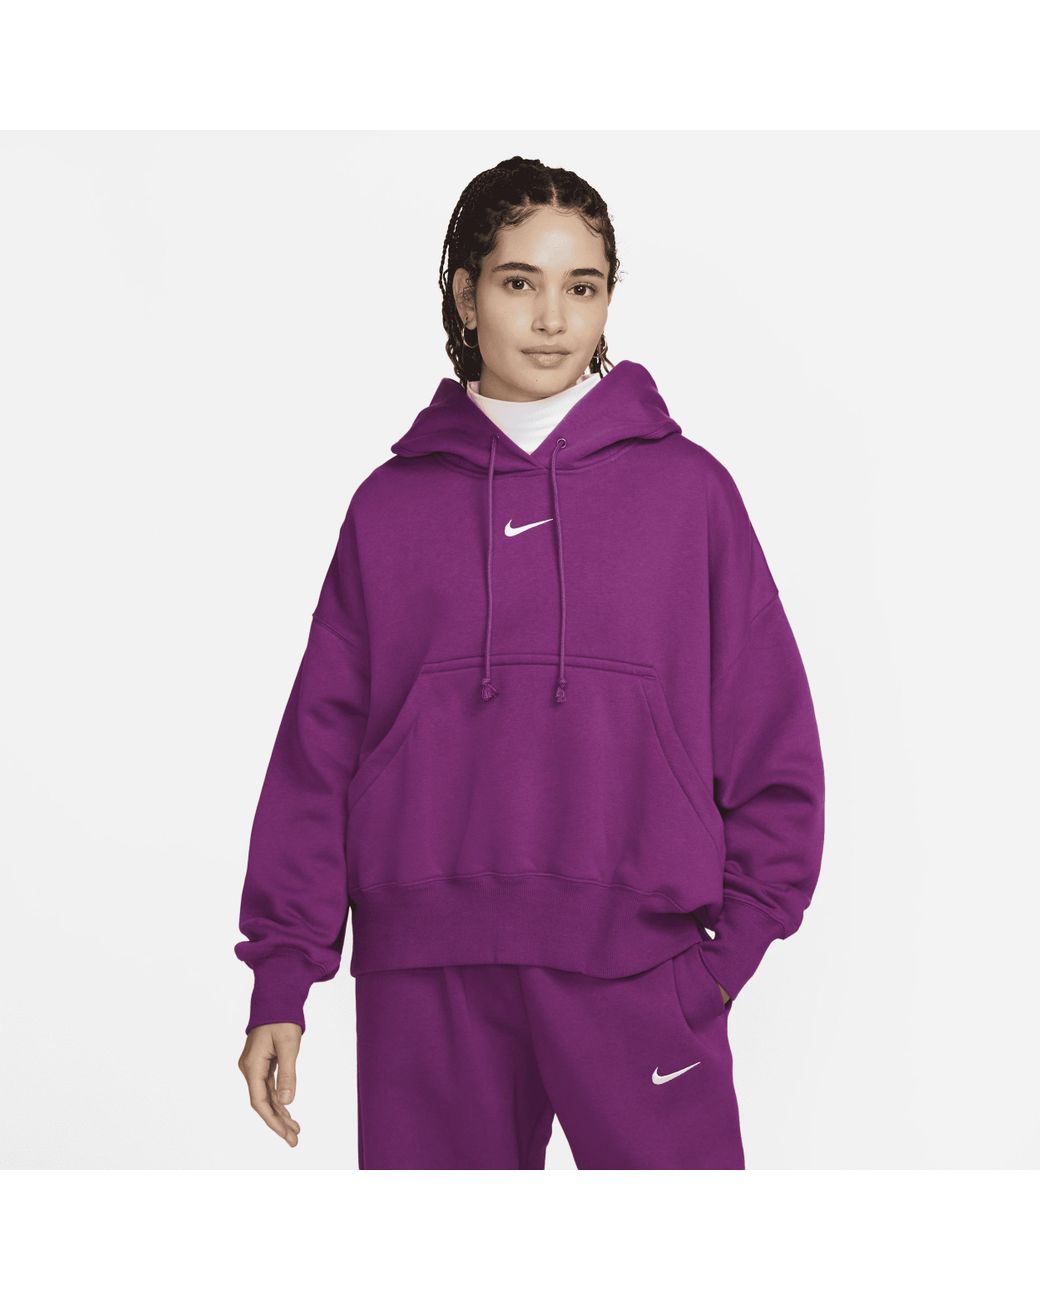 https://cdna.lystit.com/1040/1300/n/photos/nike/6d06e31c/nike-Purple-Sportswear-Phoenix-Fleece-Over-oversized-Pullover-Hoodie-In-Purple.jpeg